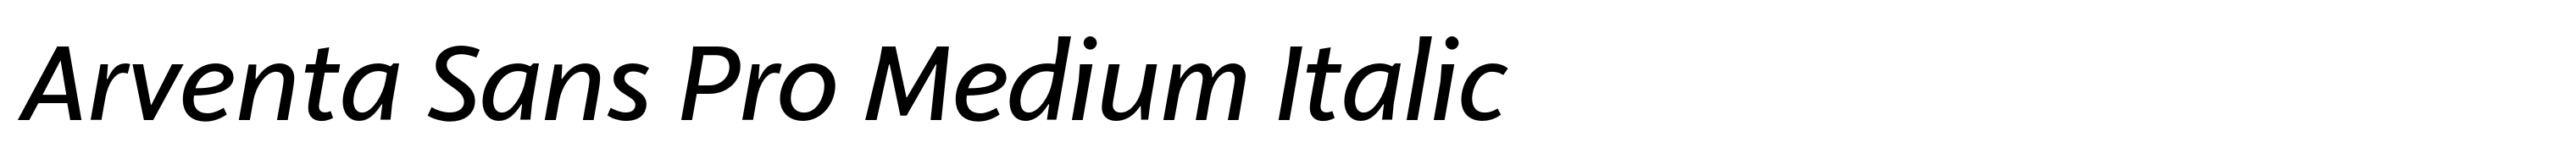 Arventa Sans Pro Medium Italic